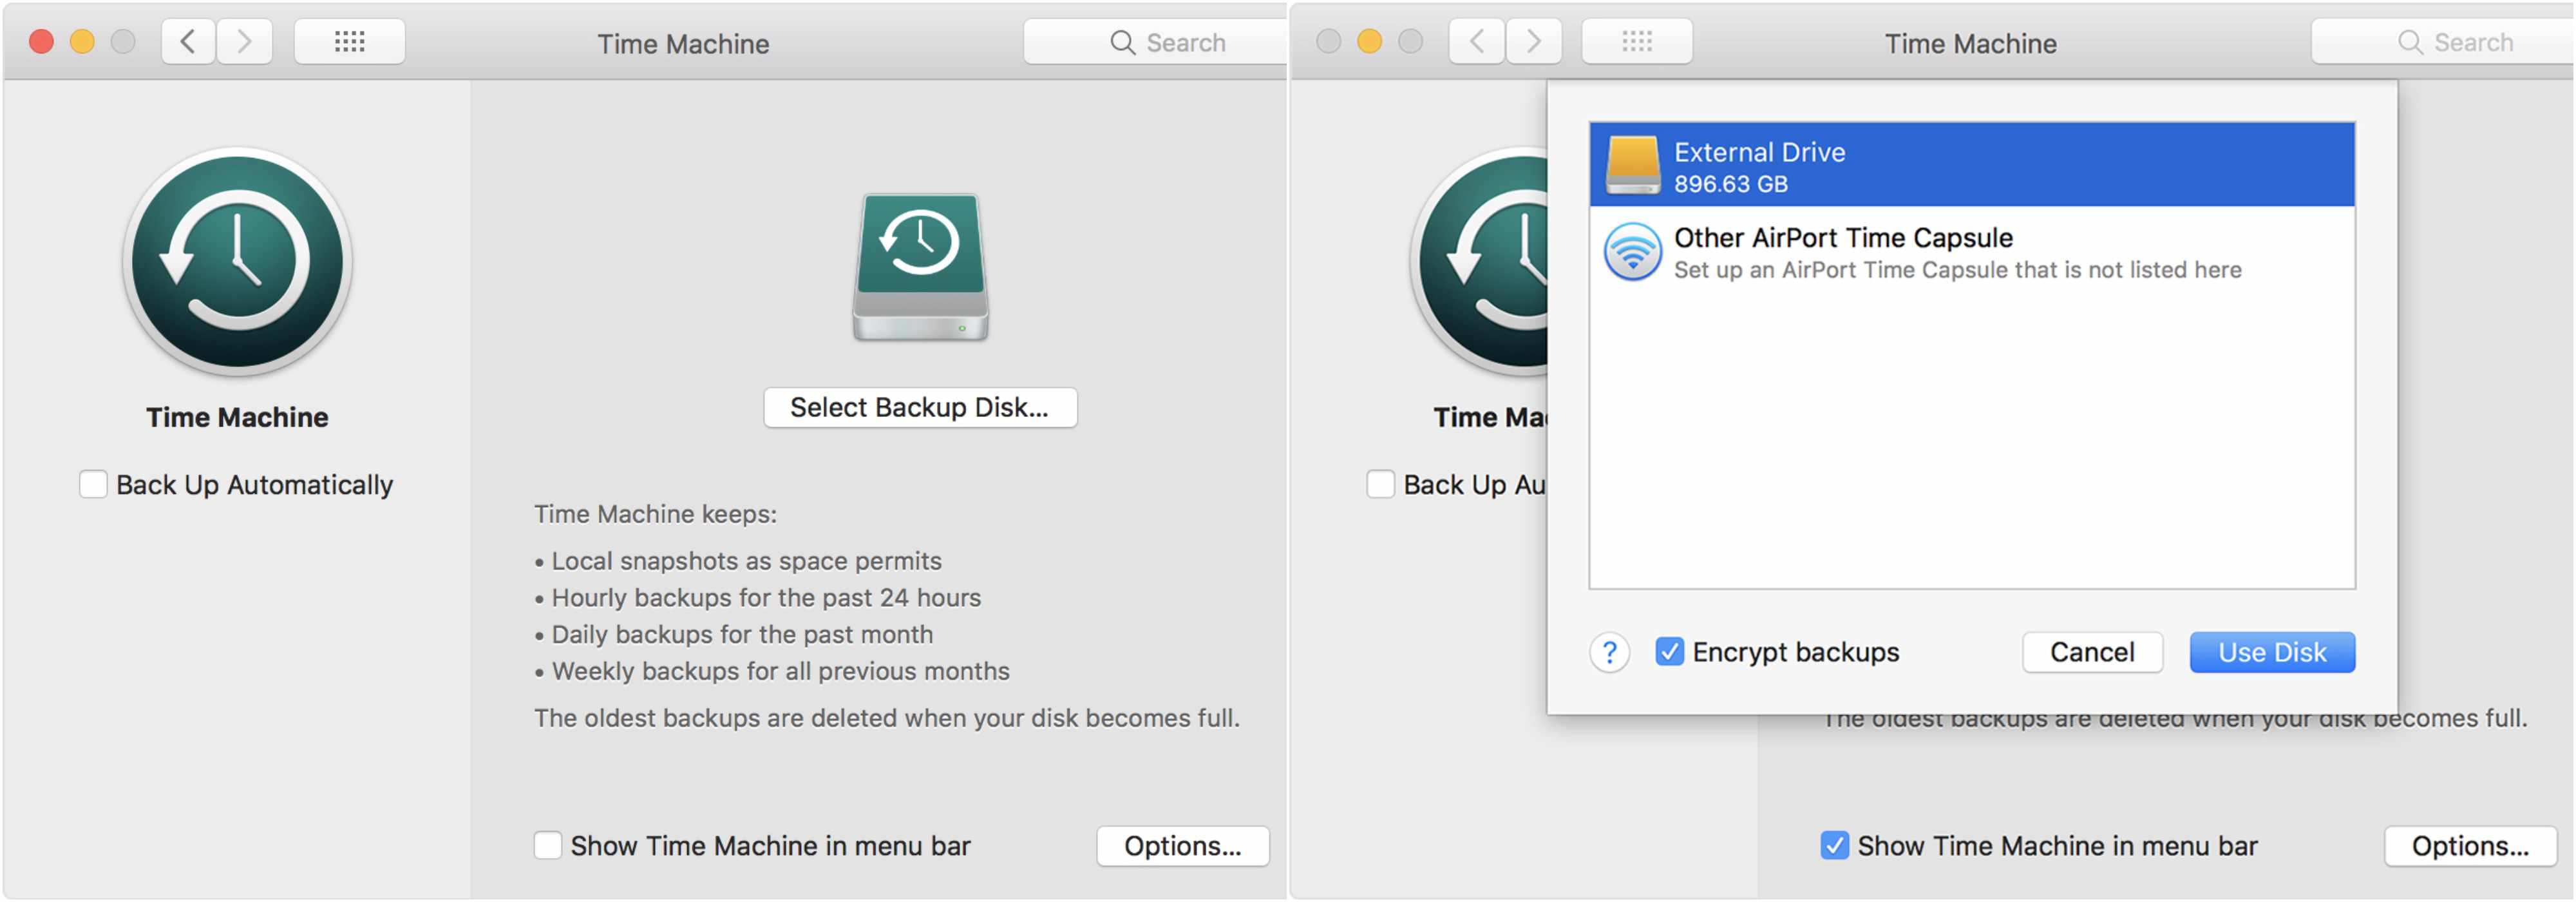 En skärmdump av Time Machine-appen på macOS